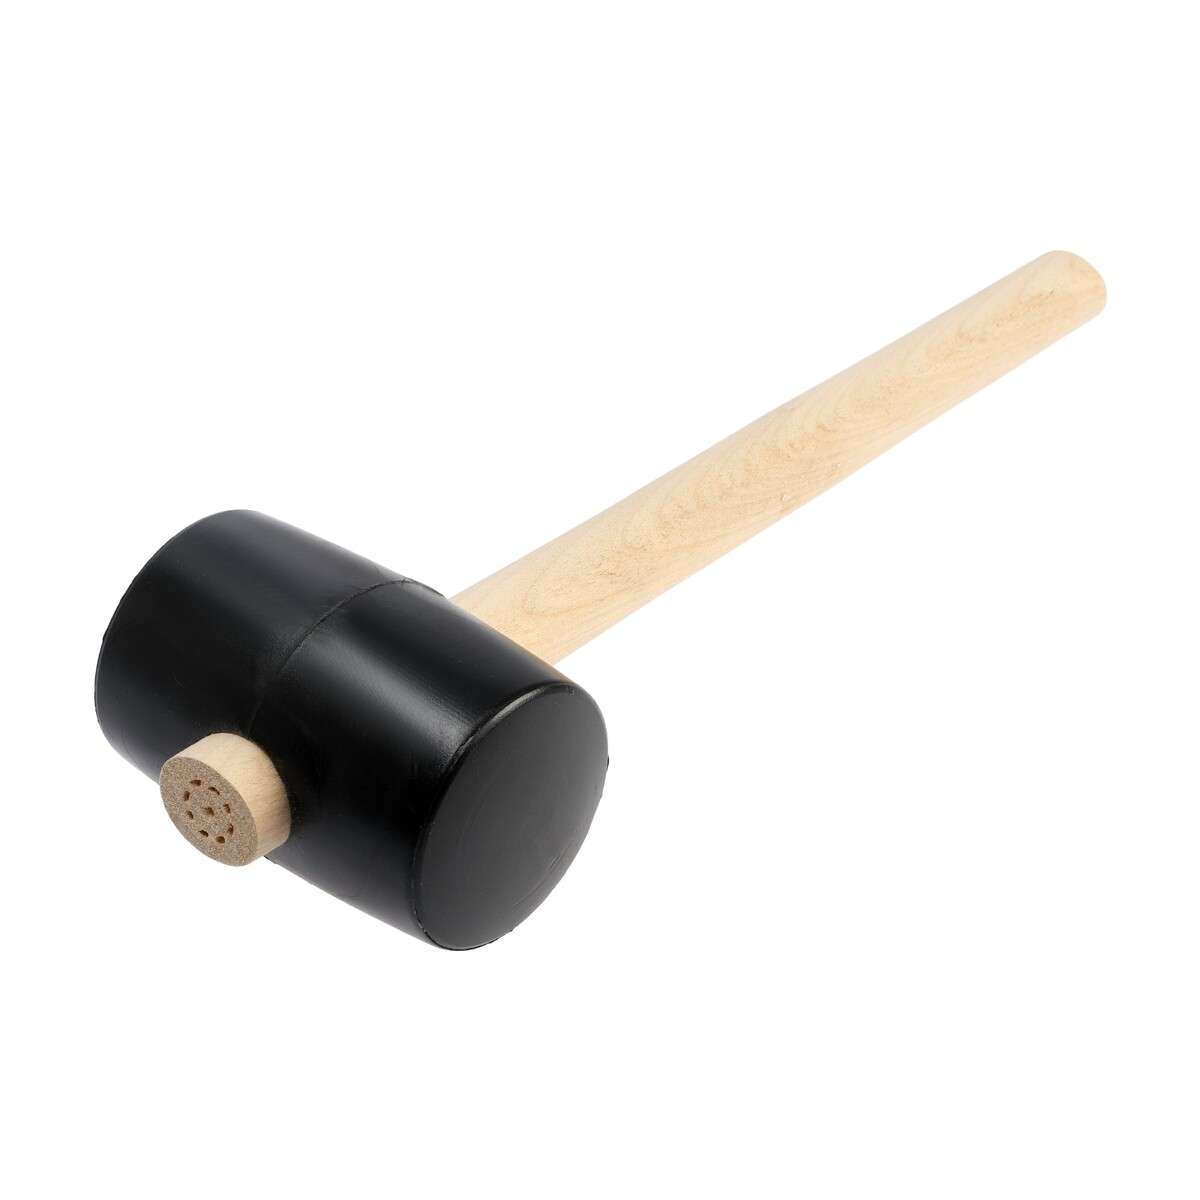 Киянка лом, деревянная рукоятка, черная резина, 65 мм, 500 г киянка тундра деревянная рукоятка черная резина 450 г